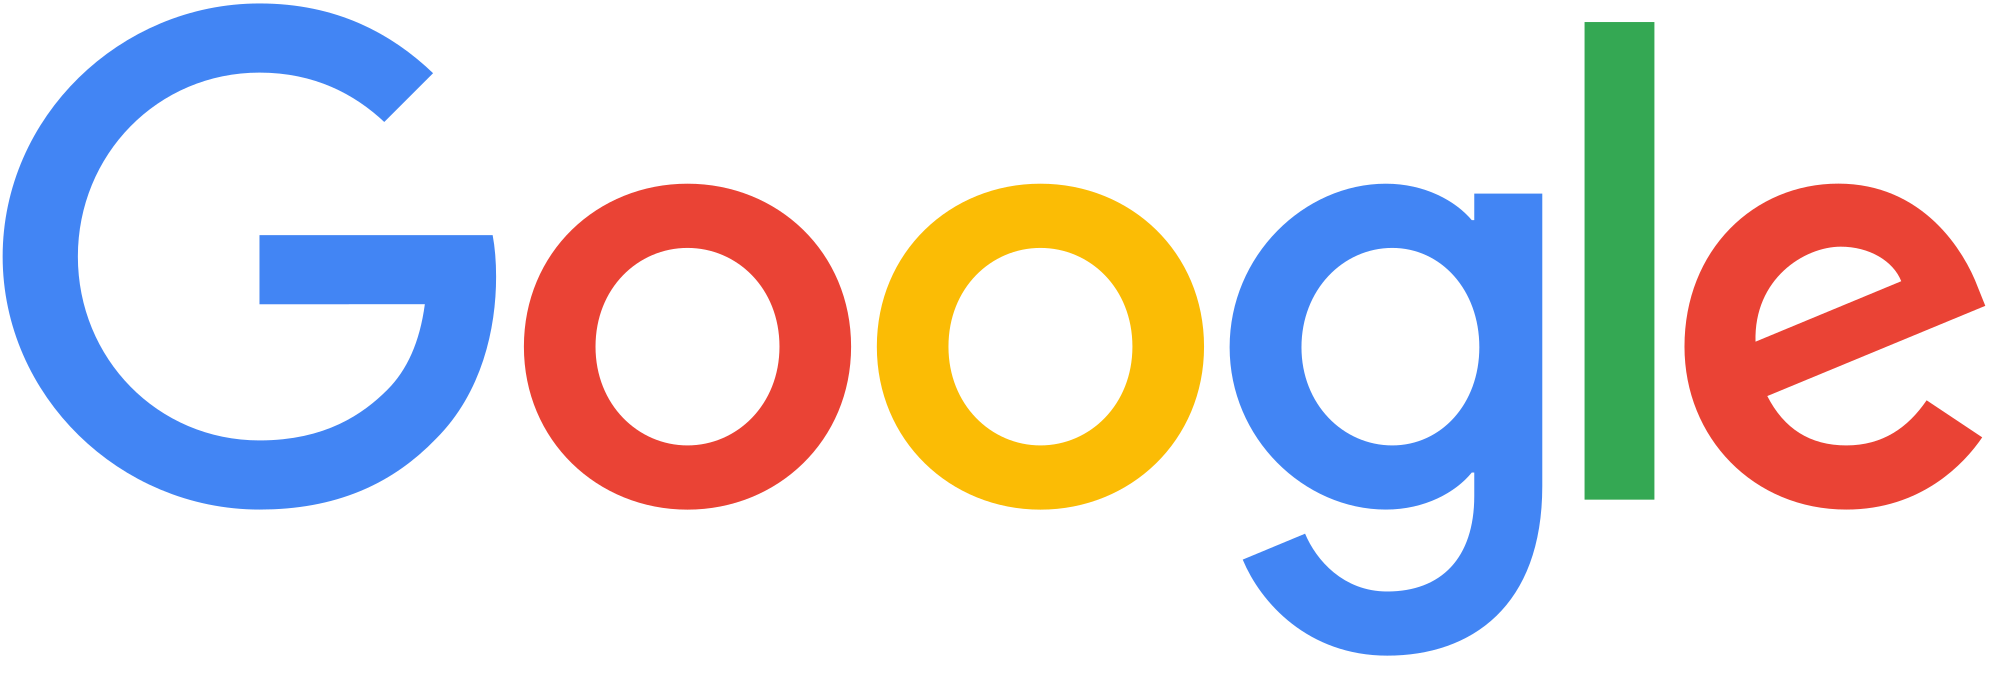 Google_logo.svg.png